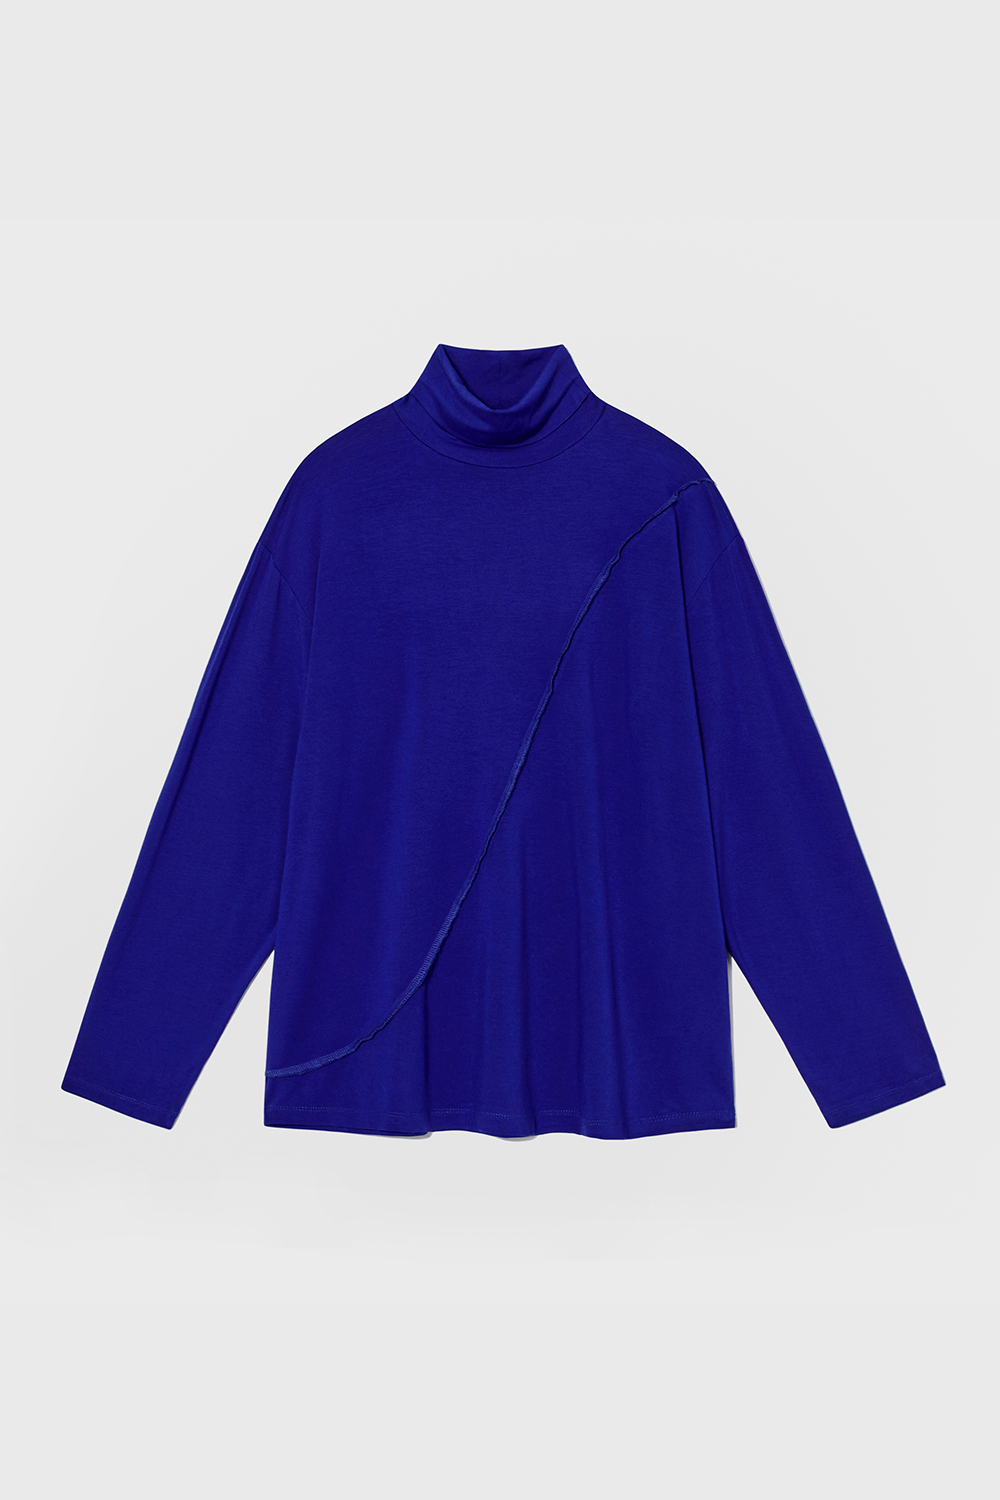 Diagonal High Neck Pullover (Royal Blue)